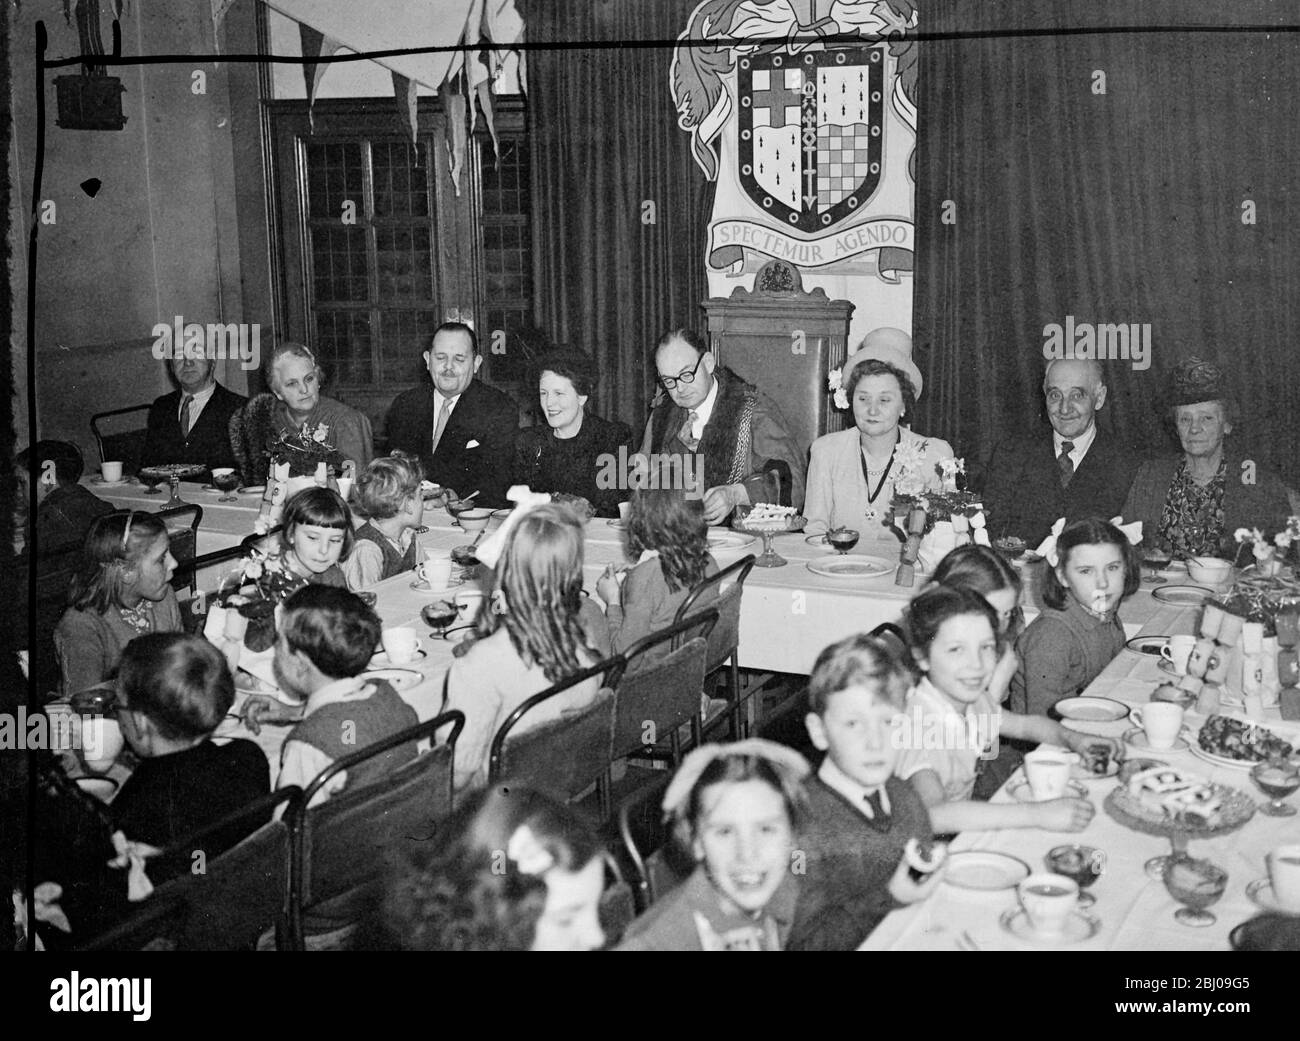 Une centaine d'enfants de Lambeth, Londres, dont les parents ont reçu des colis de Noël de nourriture d'Australie, ont été amusés par le maire de Lambeth, Cllr Simpson, aujourd'hui, à l'hôtel de ville de Lambeth. - les images montrent: De gauche à droite M. Norman Martin - Agent général pour Victoria, Mme Norman Martin, Cllr Simpson , maire de Lambeth, Mme Simpson, M. Wilson, et Mme Wilson comme parti aujourd'hui. - 20 décembre 1947 Banque D'Images